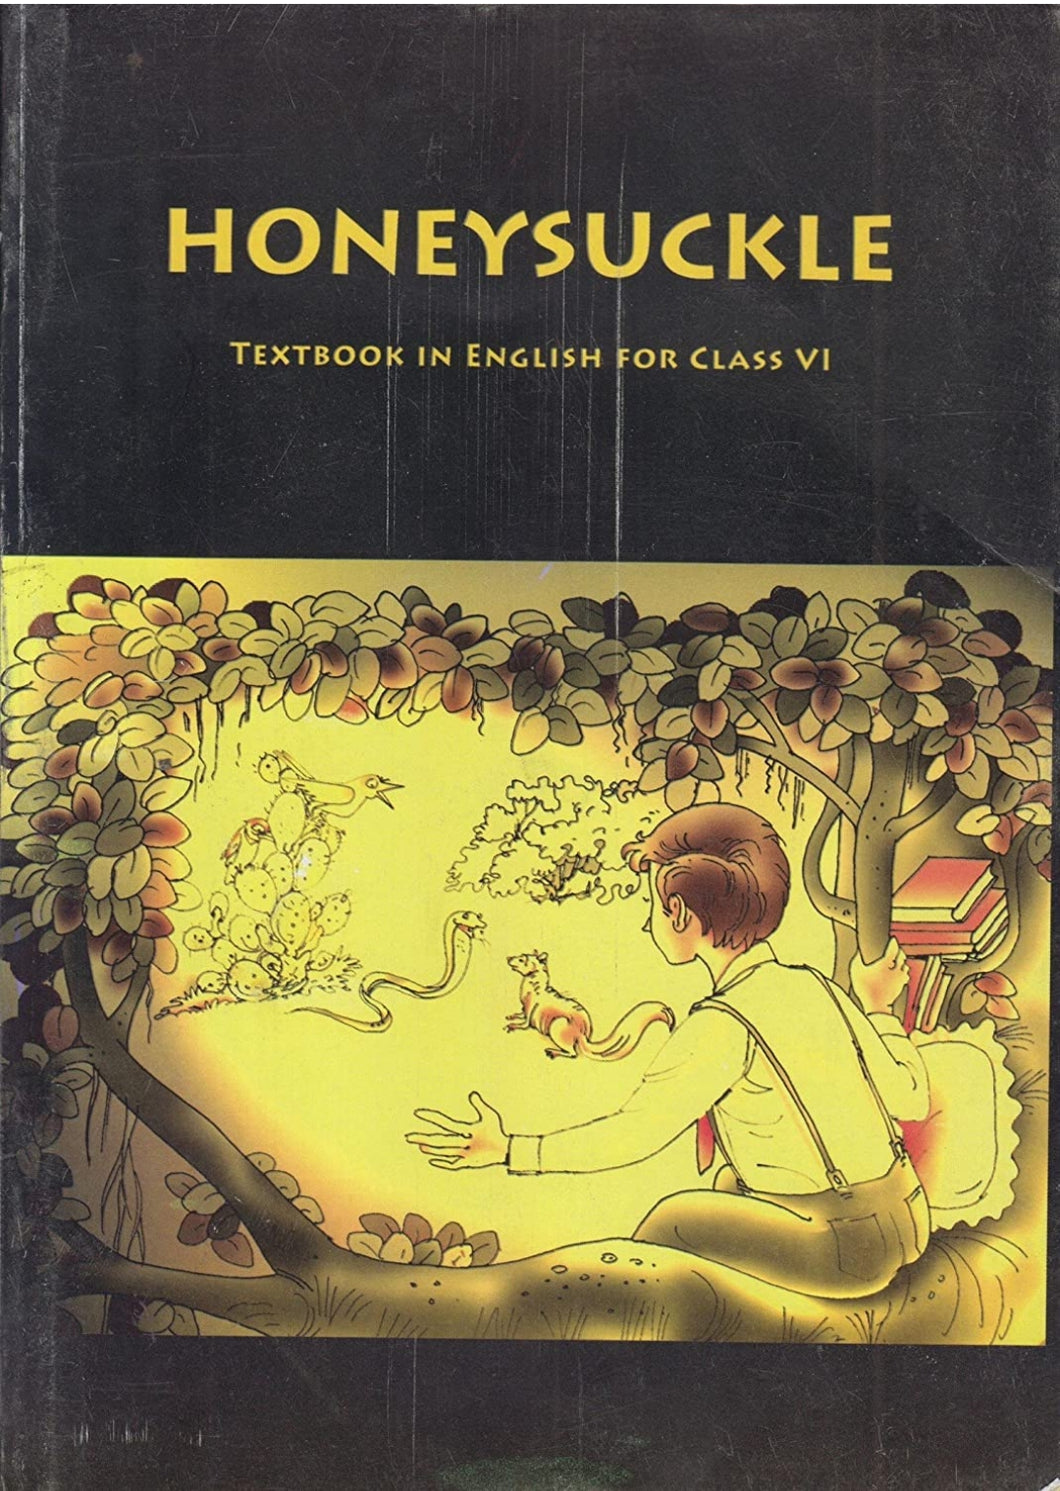 NCERT class 6 Honeysuckle 100% original - latest edition as per NCERT/CBSE